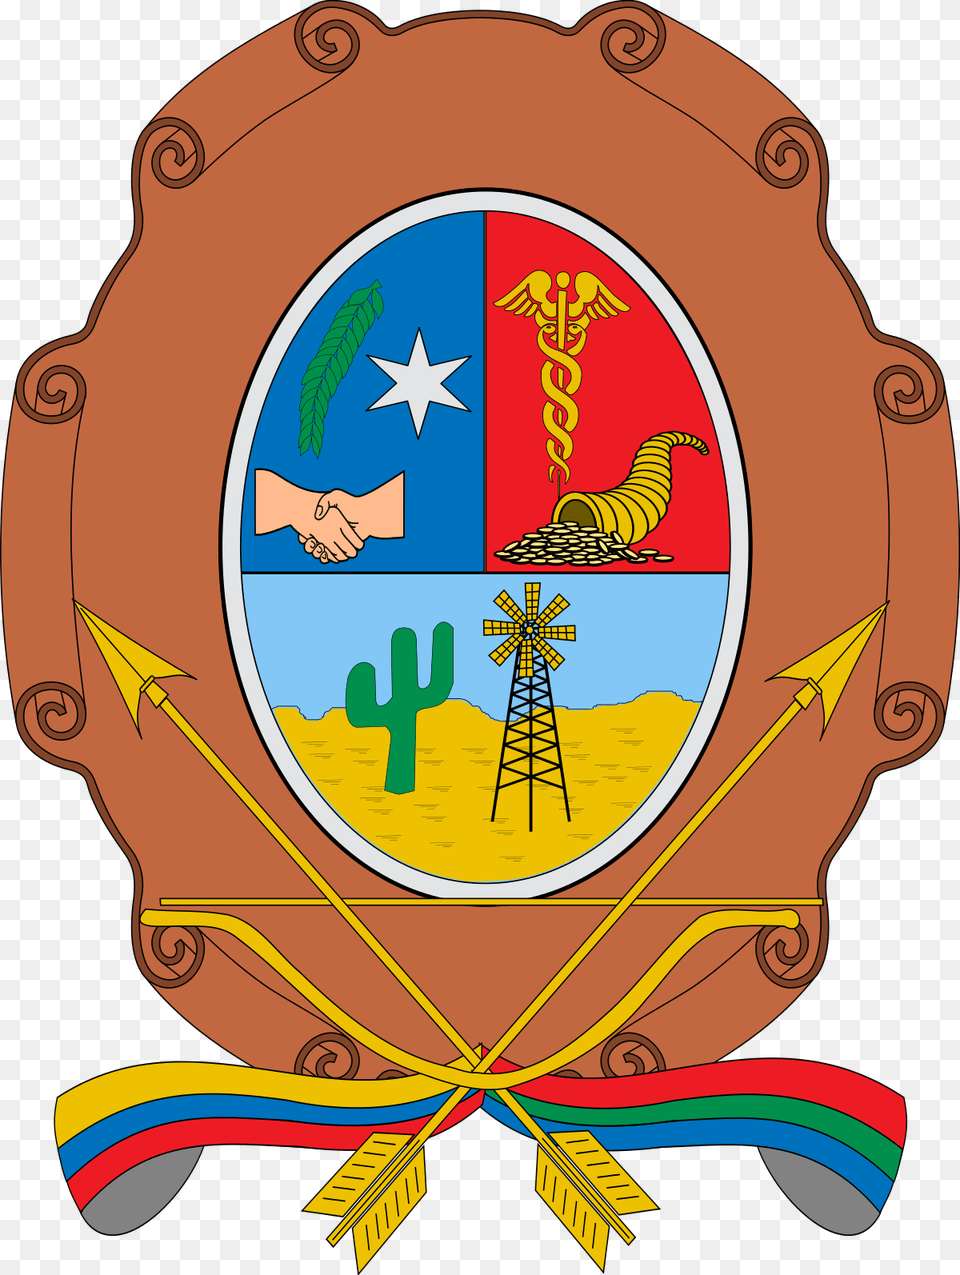 Escudo De Maicao, Badge, Logo, Symbol, Emblem Free Png